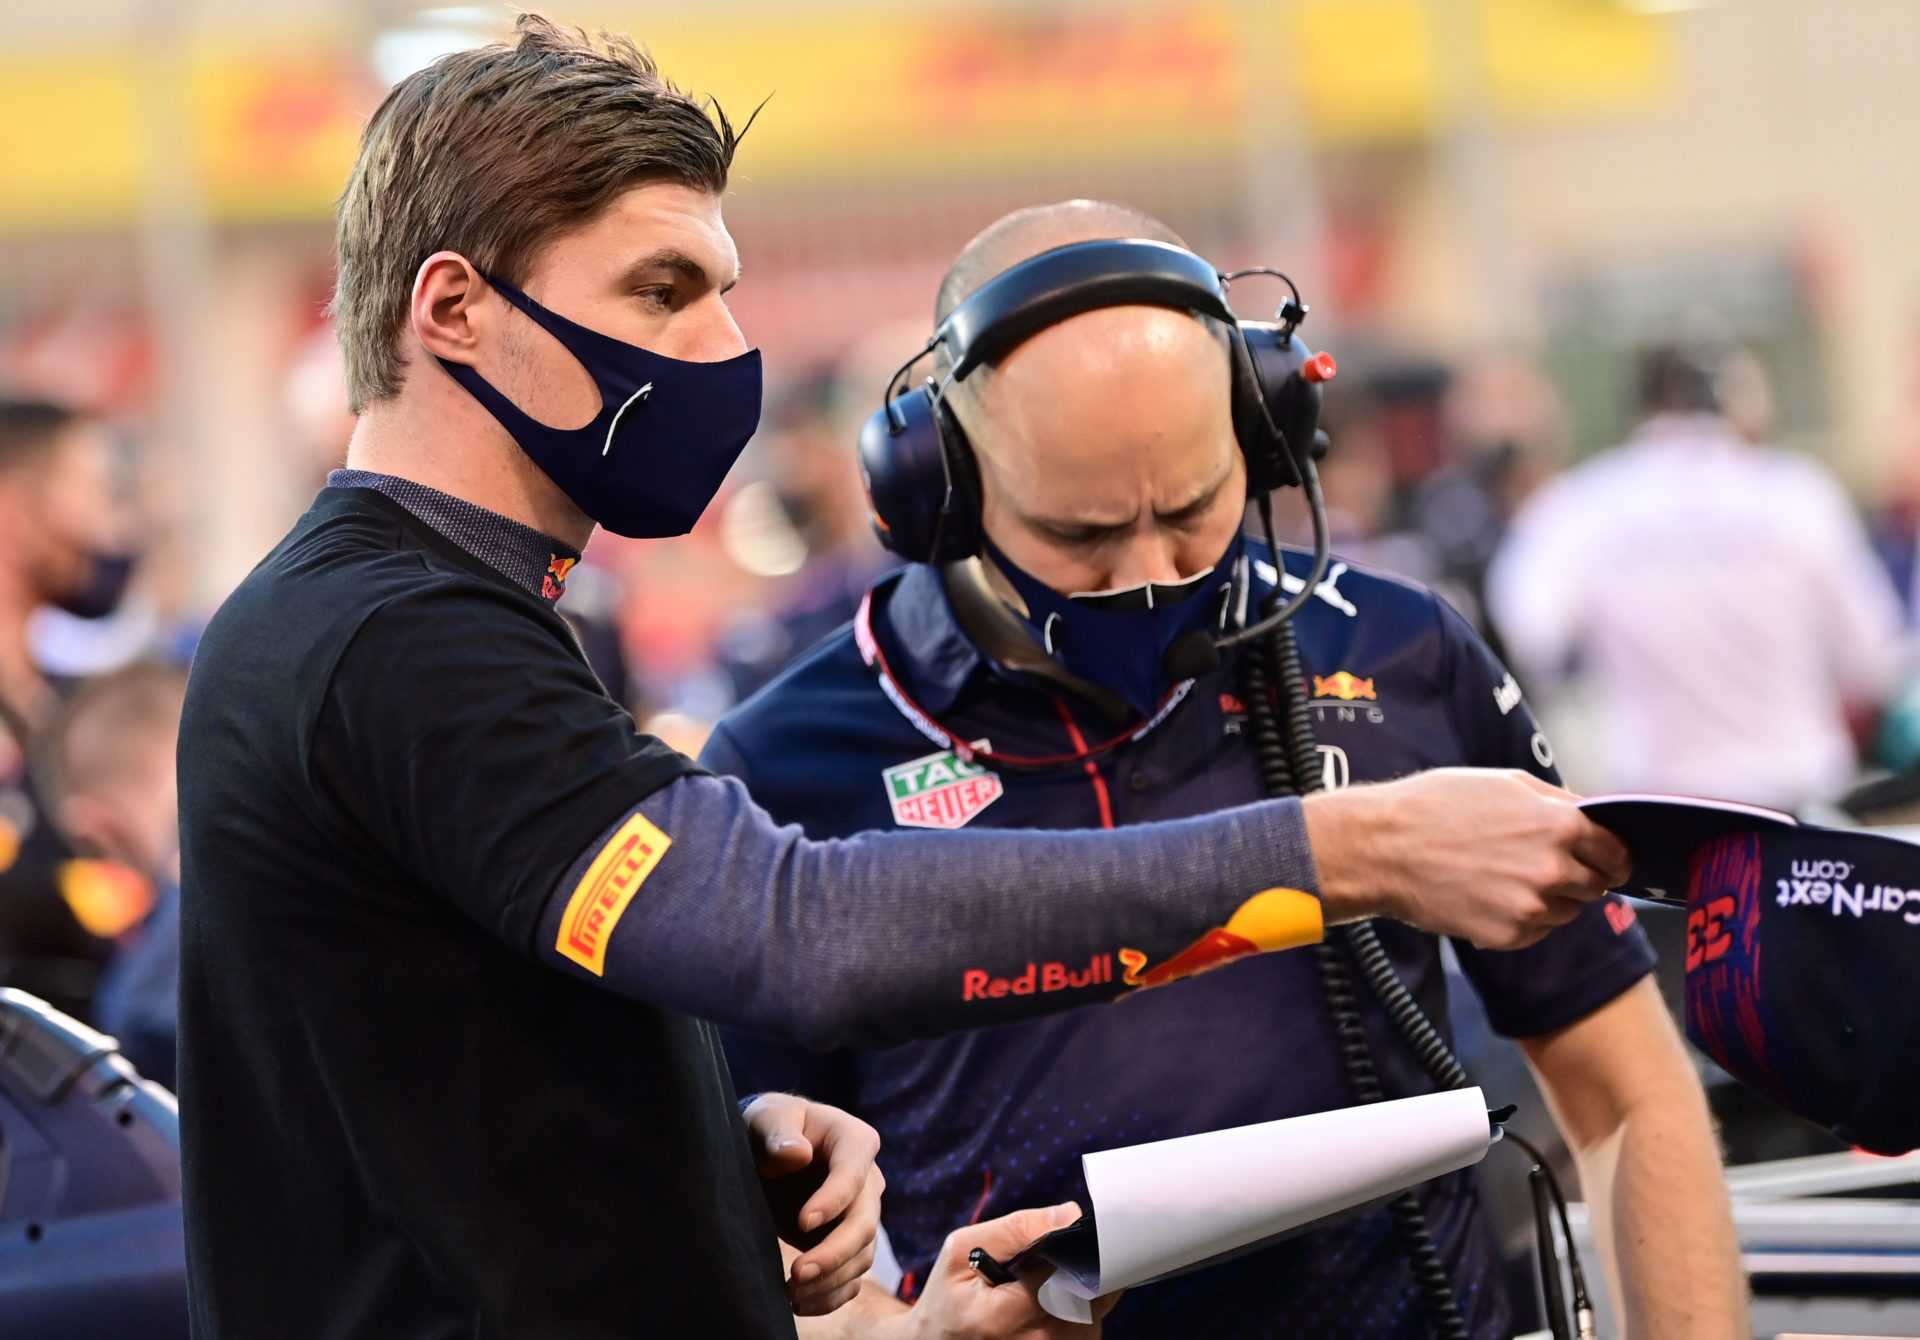 Qui est l'ingénieur de course de Max Verstappen chez Red Bull F1 - Gianpiero Lambiase?